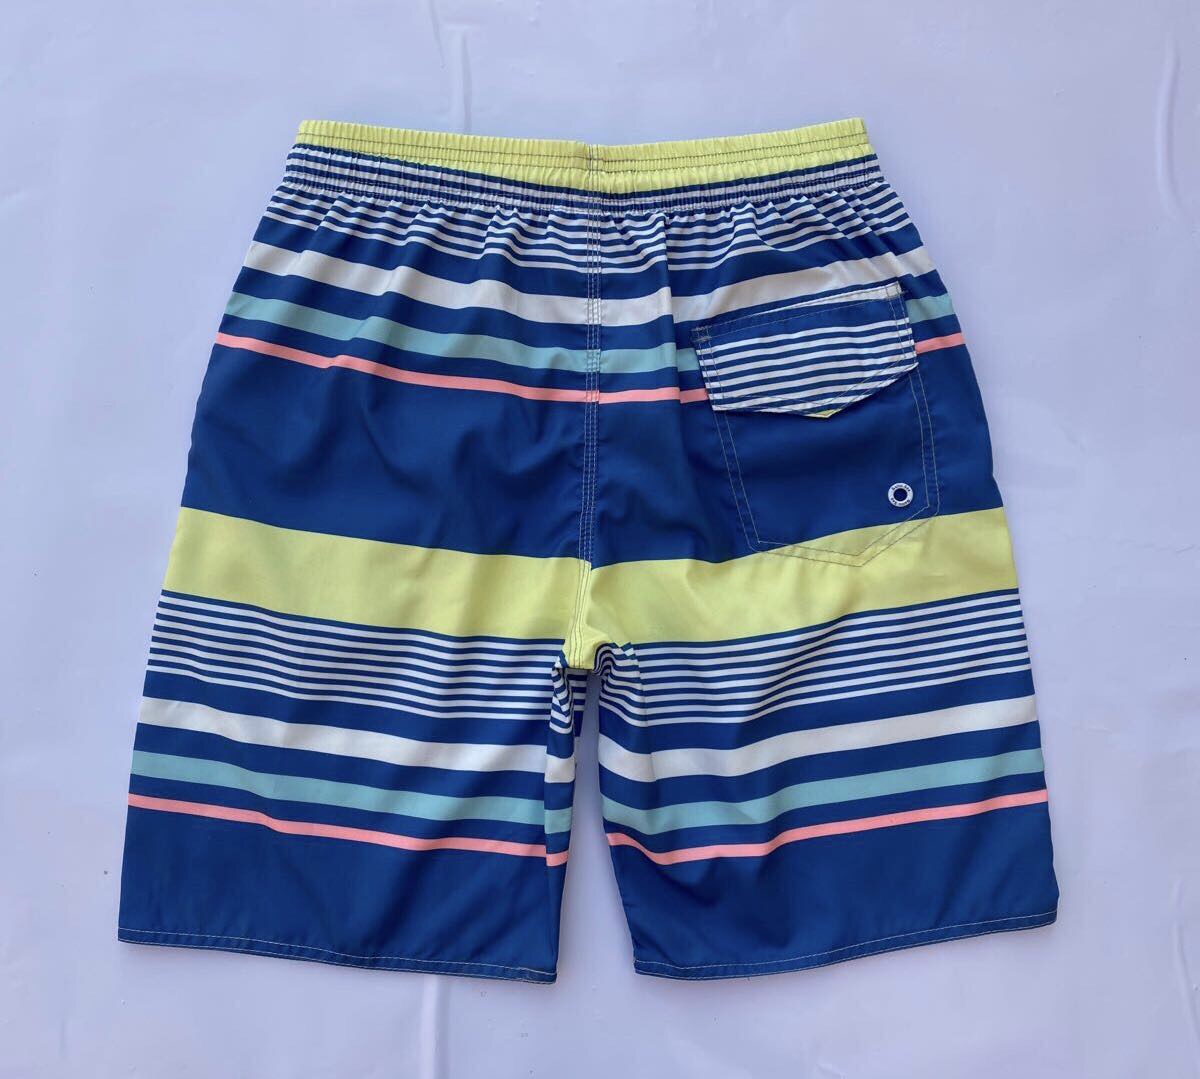 夏季潮流时尚撞色条纹沙滩裤男士ins休闲短裤流行青少年宽松五分裤产品图